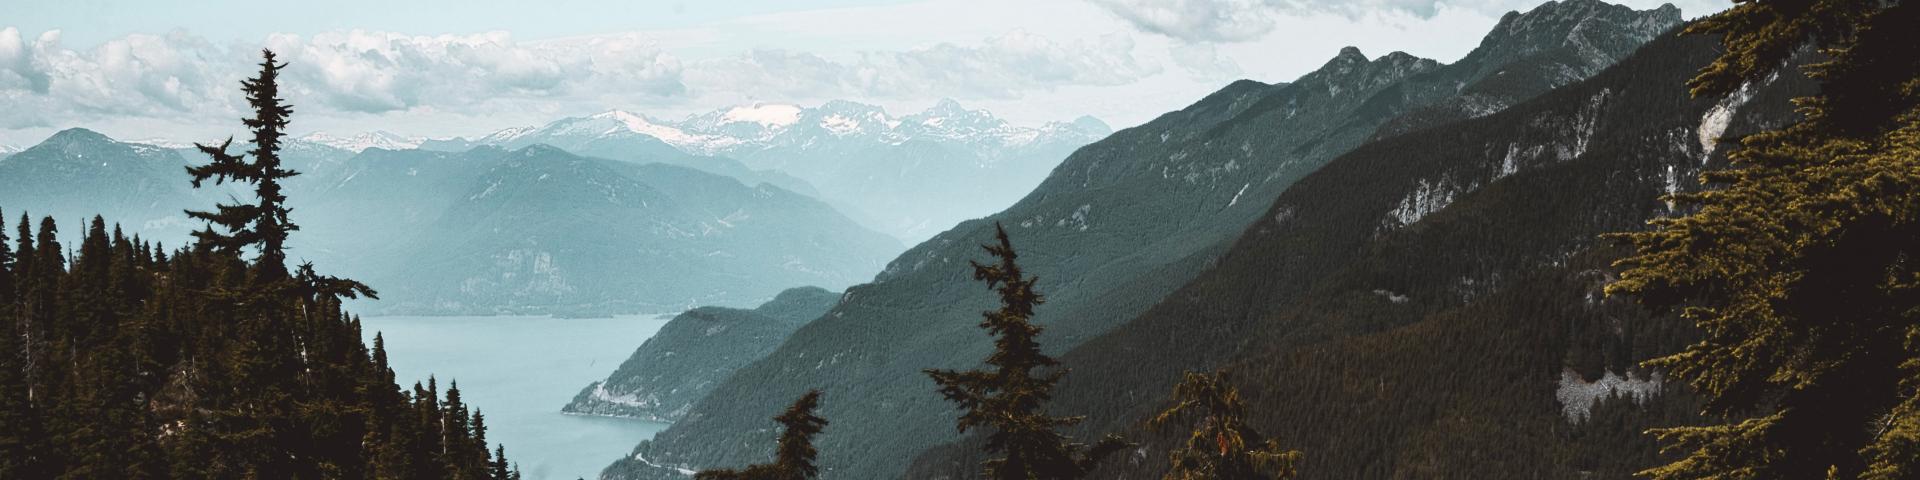 British Columbia landscape